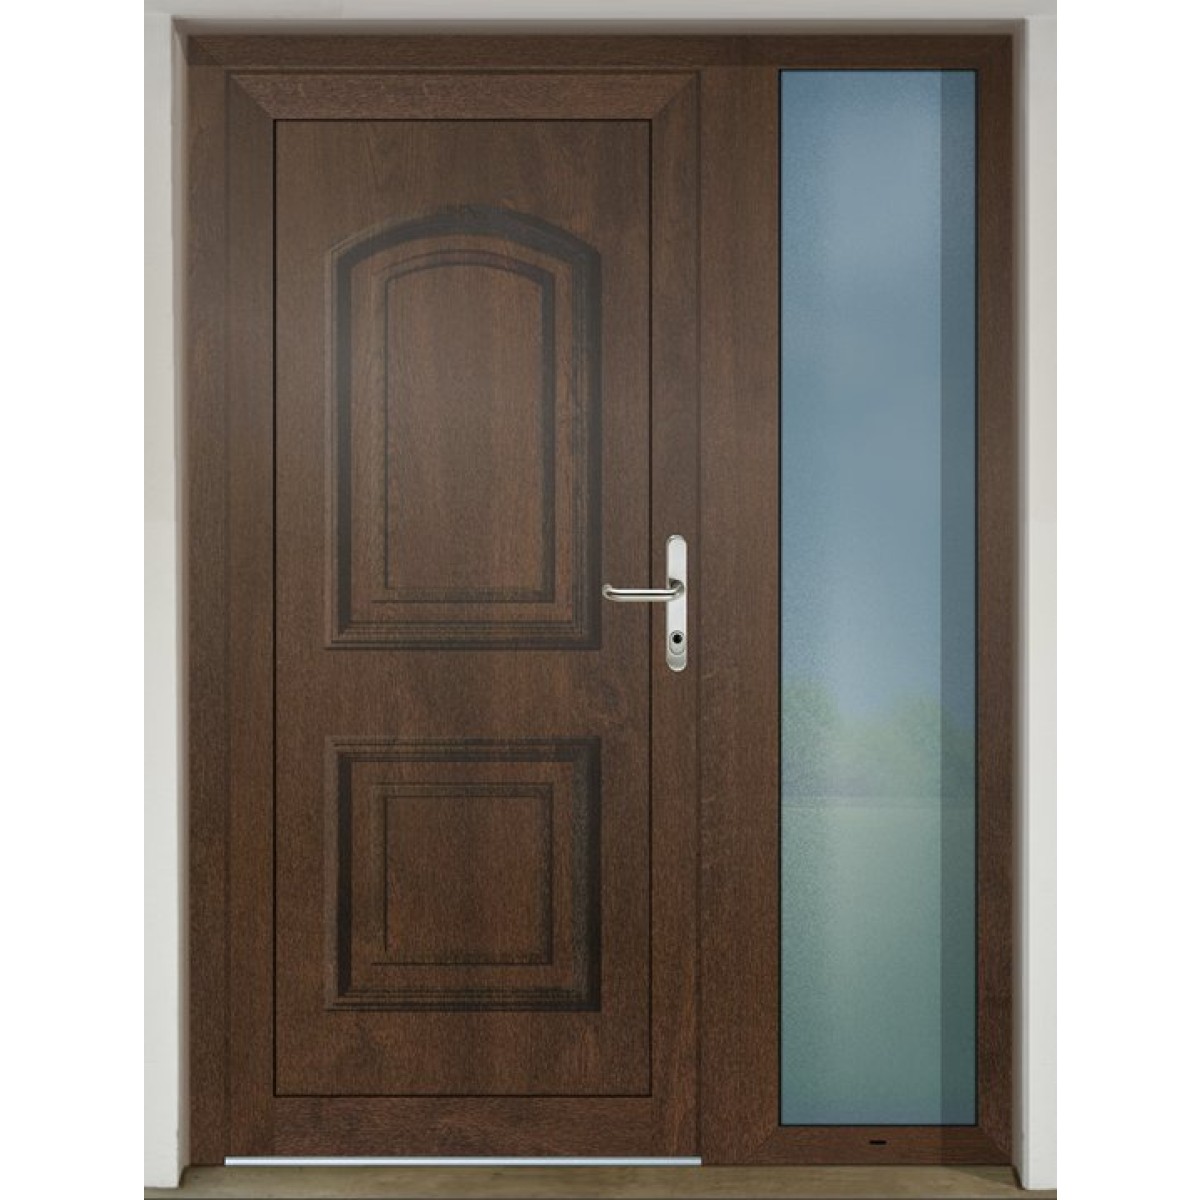 Gava Plast 011 Nussbaum - entrance door